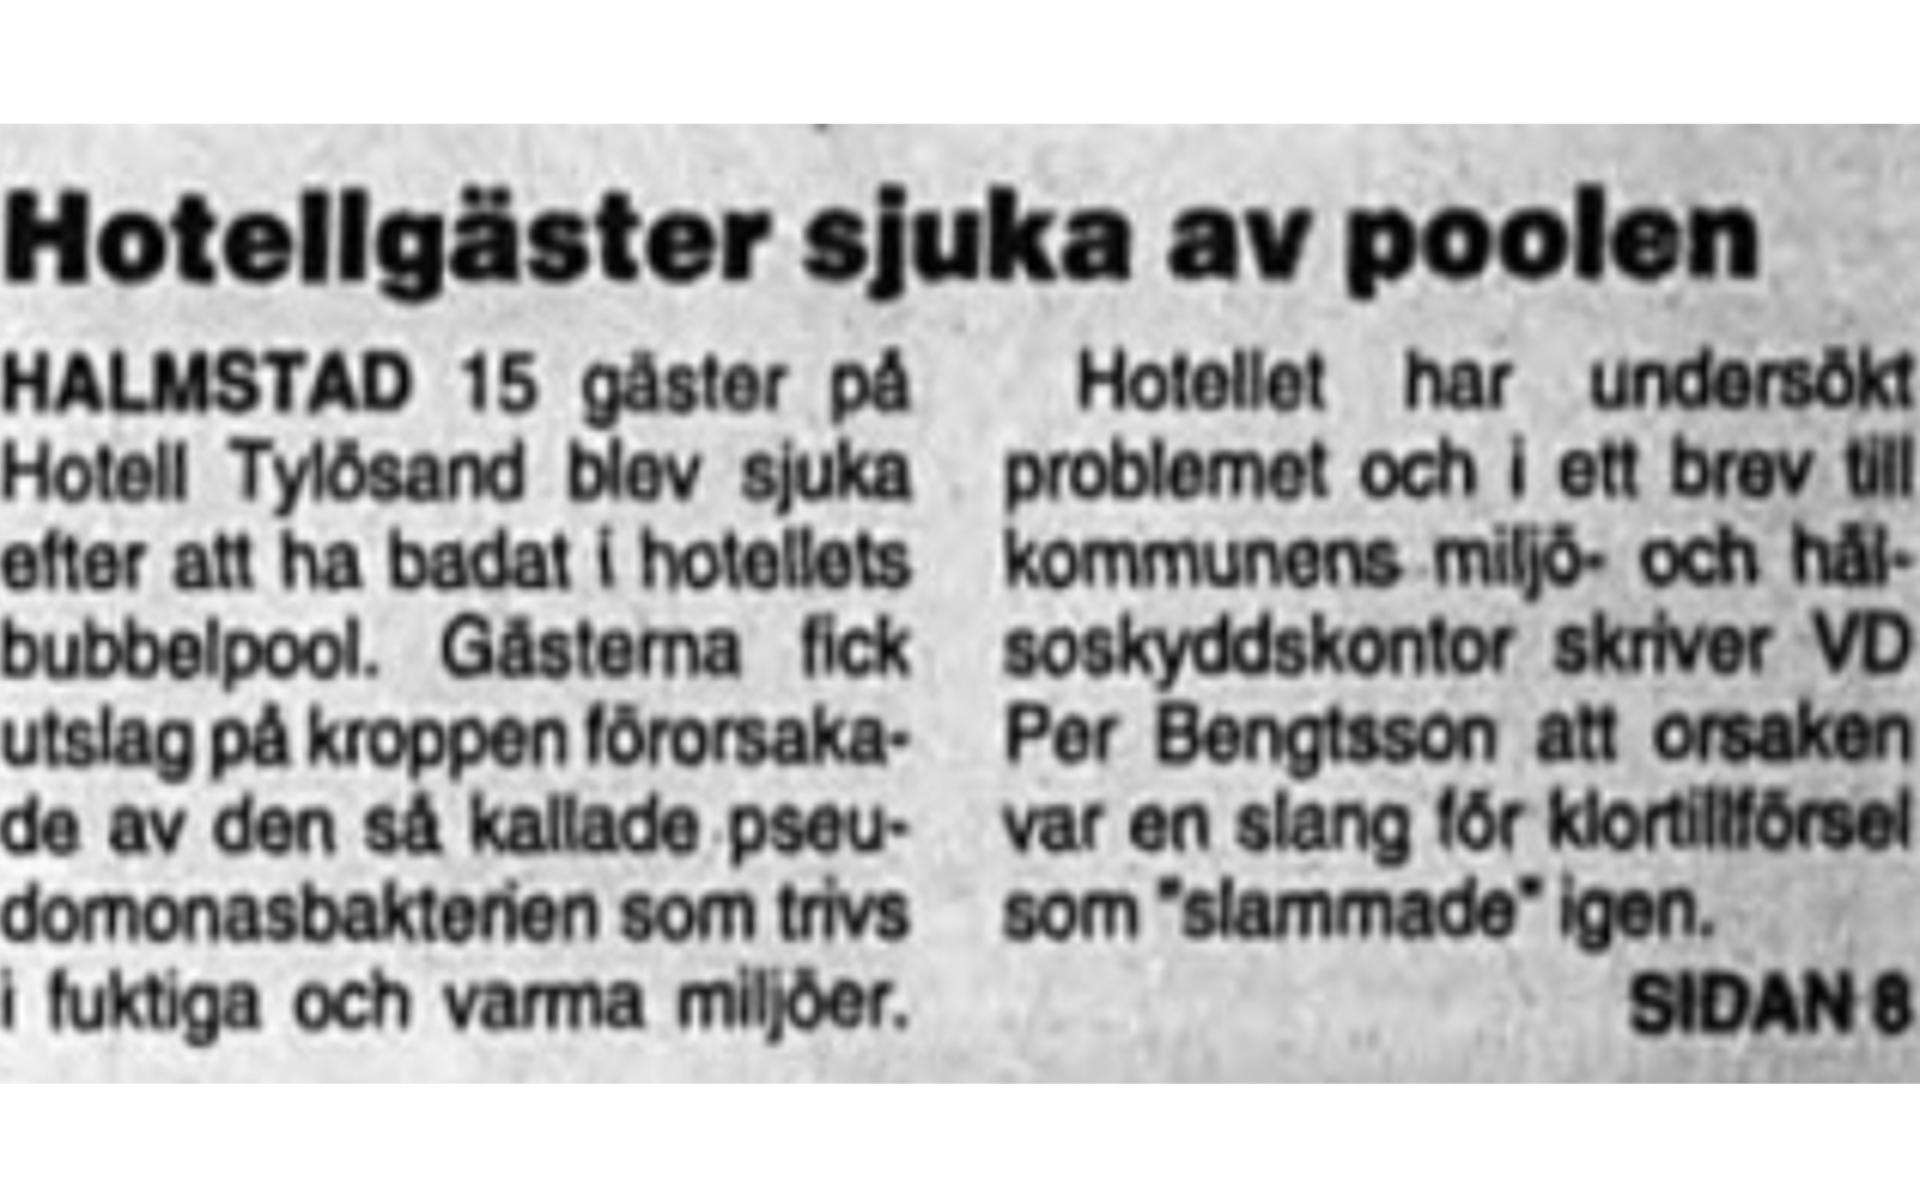 90-talets egna pest drabbade hotellet 1998. 15 gäster insjuknade efter ett besök i bubbelpoolen. 